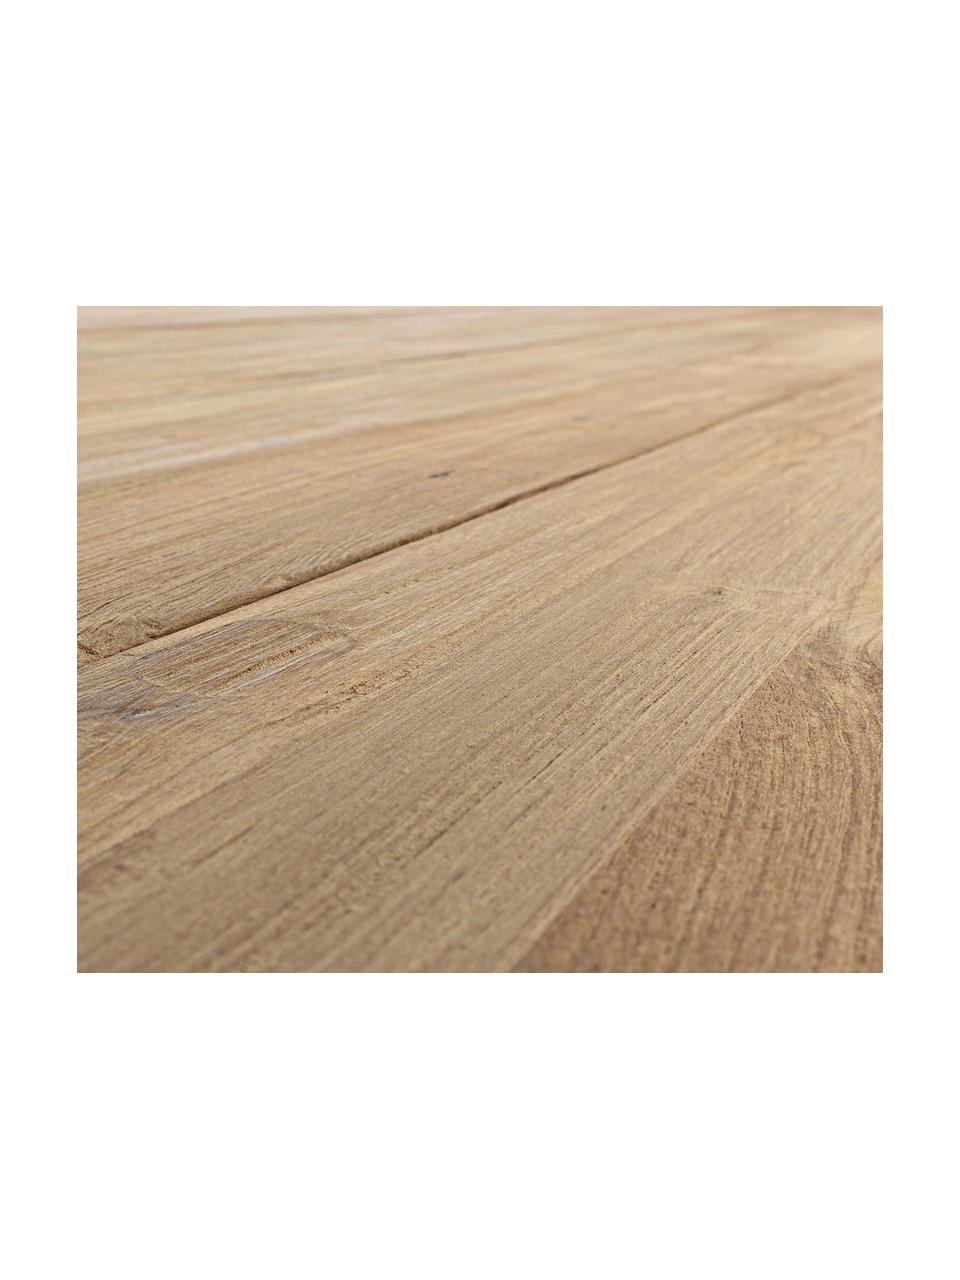 Zahradní stůl Kendari, Recyklované, neošetřené teakové dřevo
Certifikace FSC, Teakové dřevo, Š 260 cm, H 100 cm